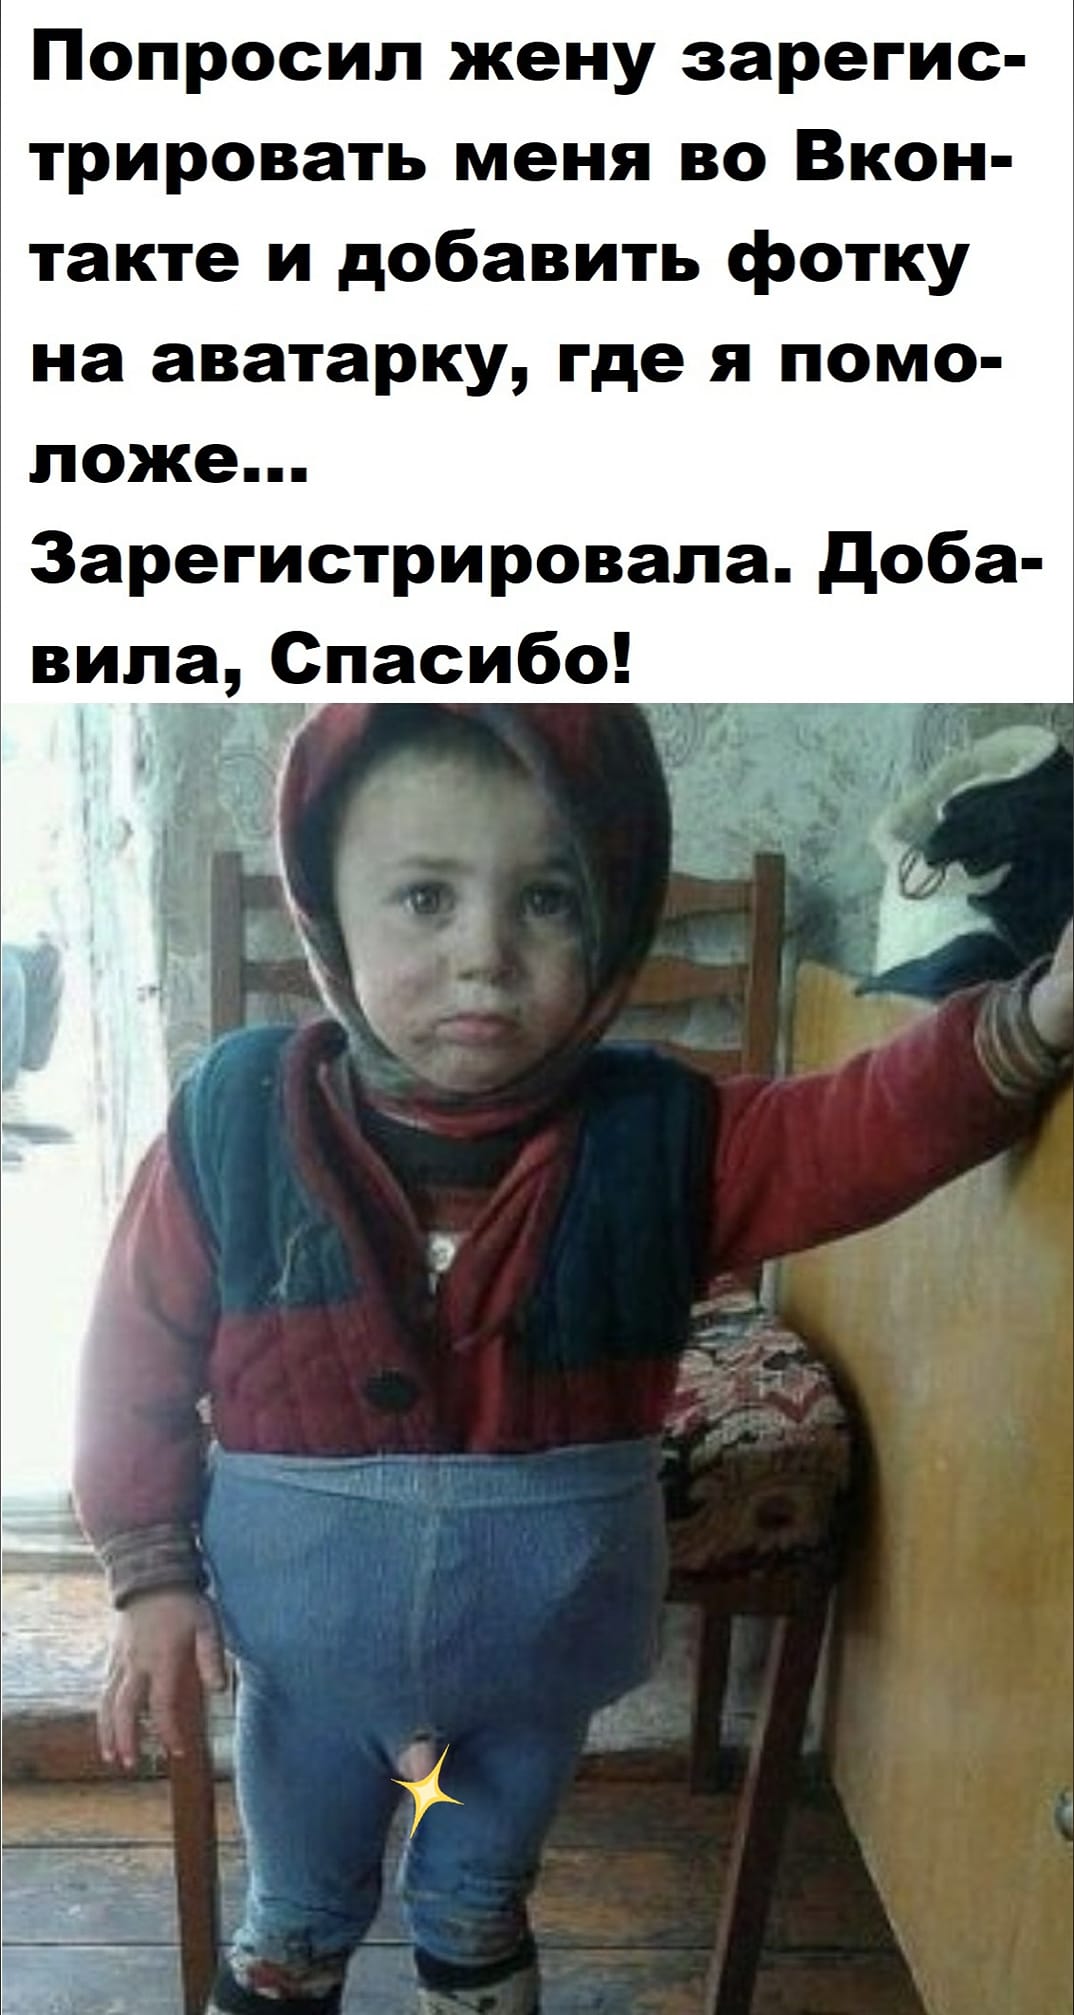 Дочь нового русского говорит с плачем своему мужу... Весёлые,прикольные и забавные фотки и картинки,А так же анекдоты и приятное общение